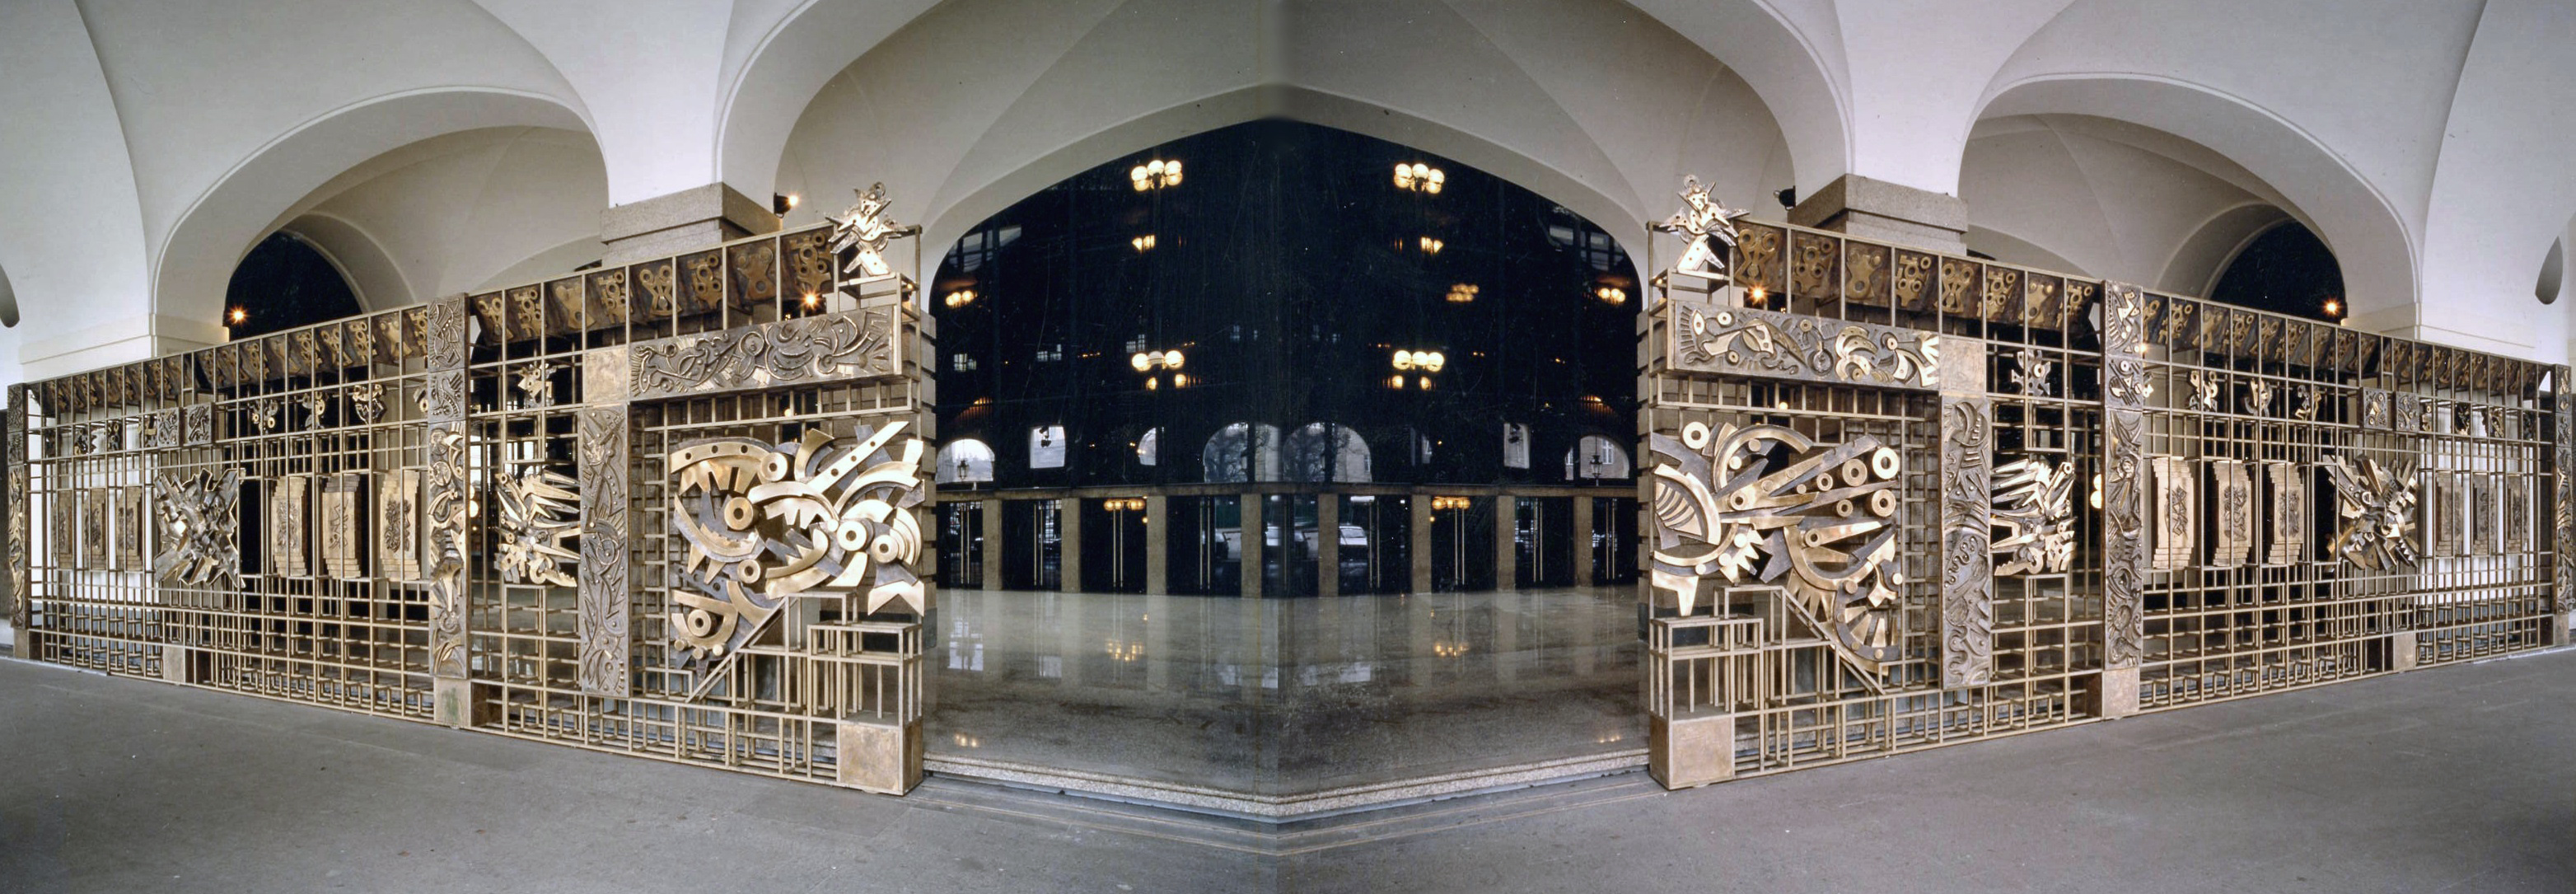 Fotomontaggio prospettico dell’ingresso principale del Teatro con la cancellata bronzea “Odissea musicale”, opera dello scultore Umberto Mastroianni